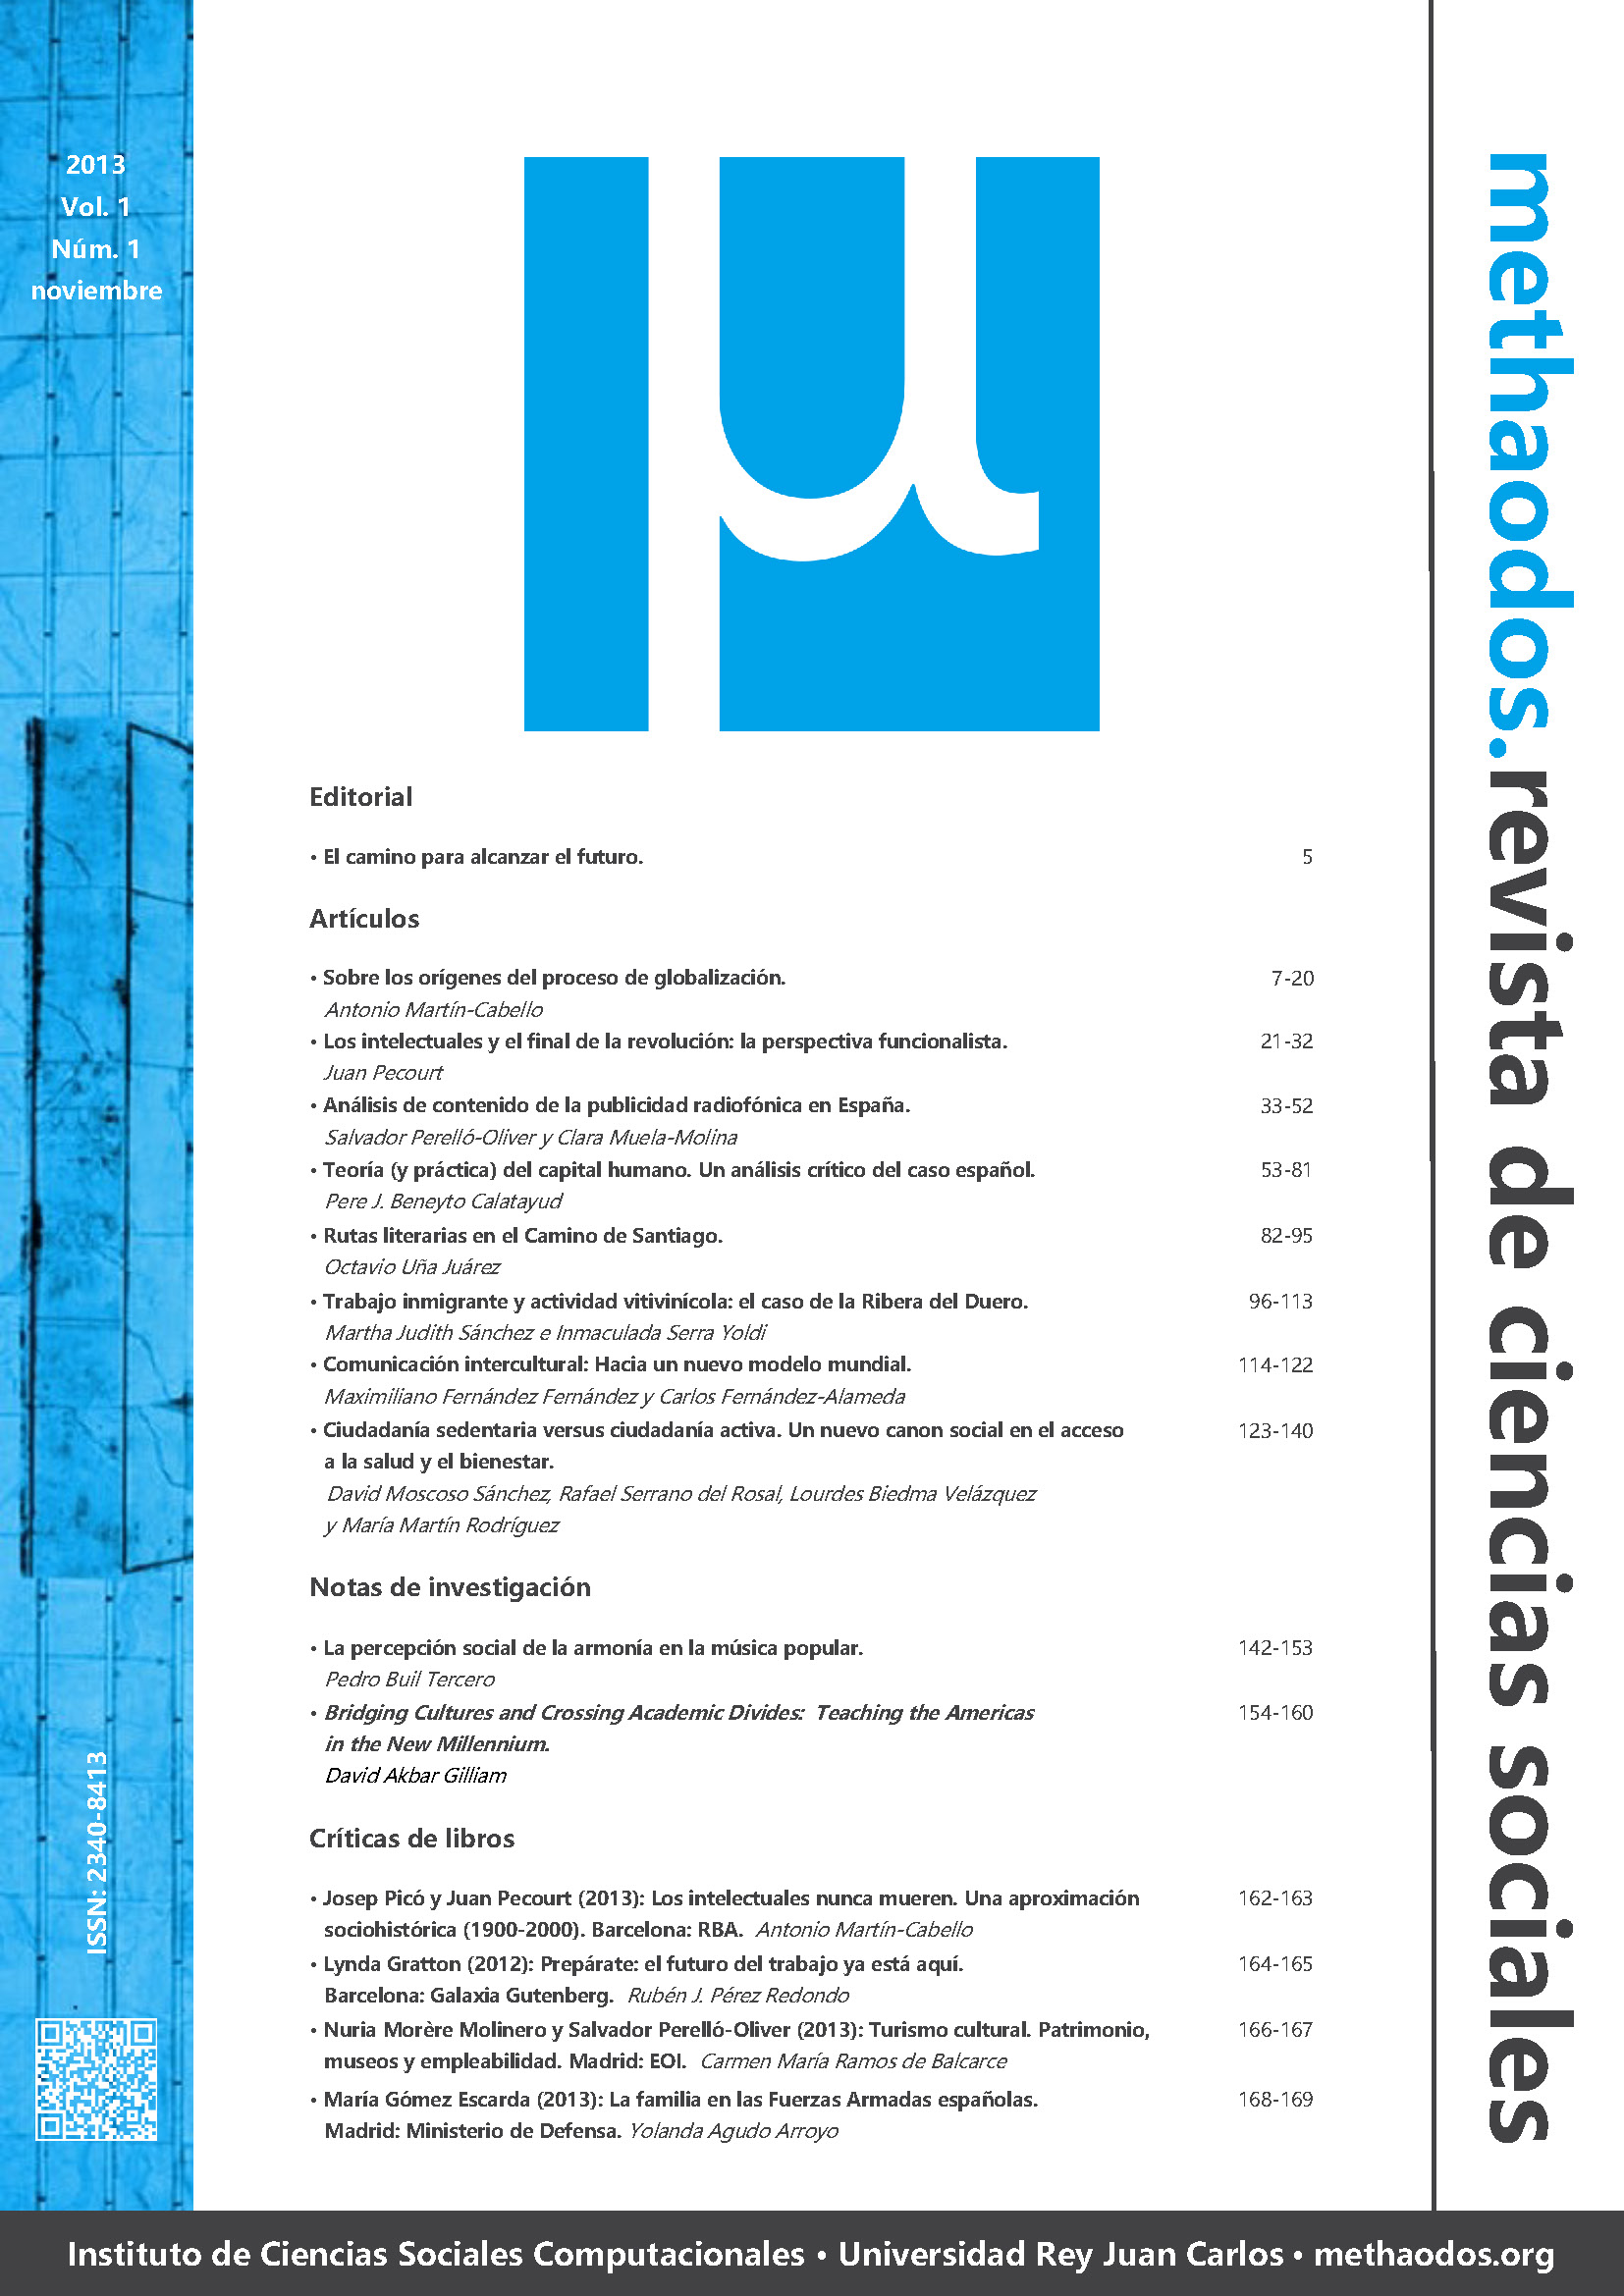 methaodos.revista de ciencias sociales. Vol. 1 Núm. 1 (2013)